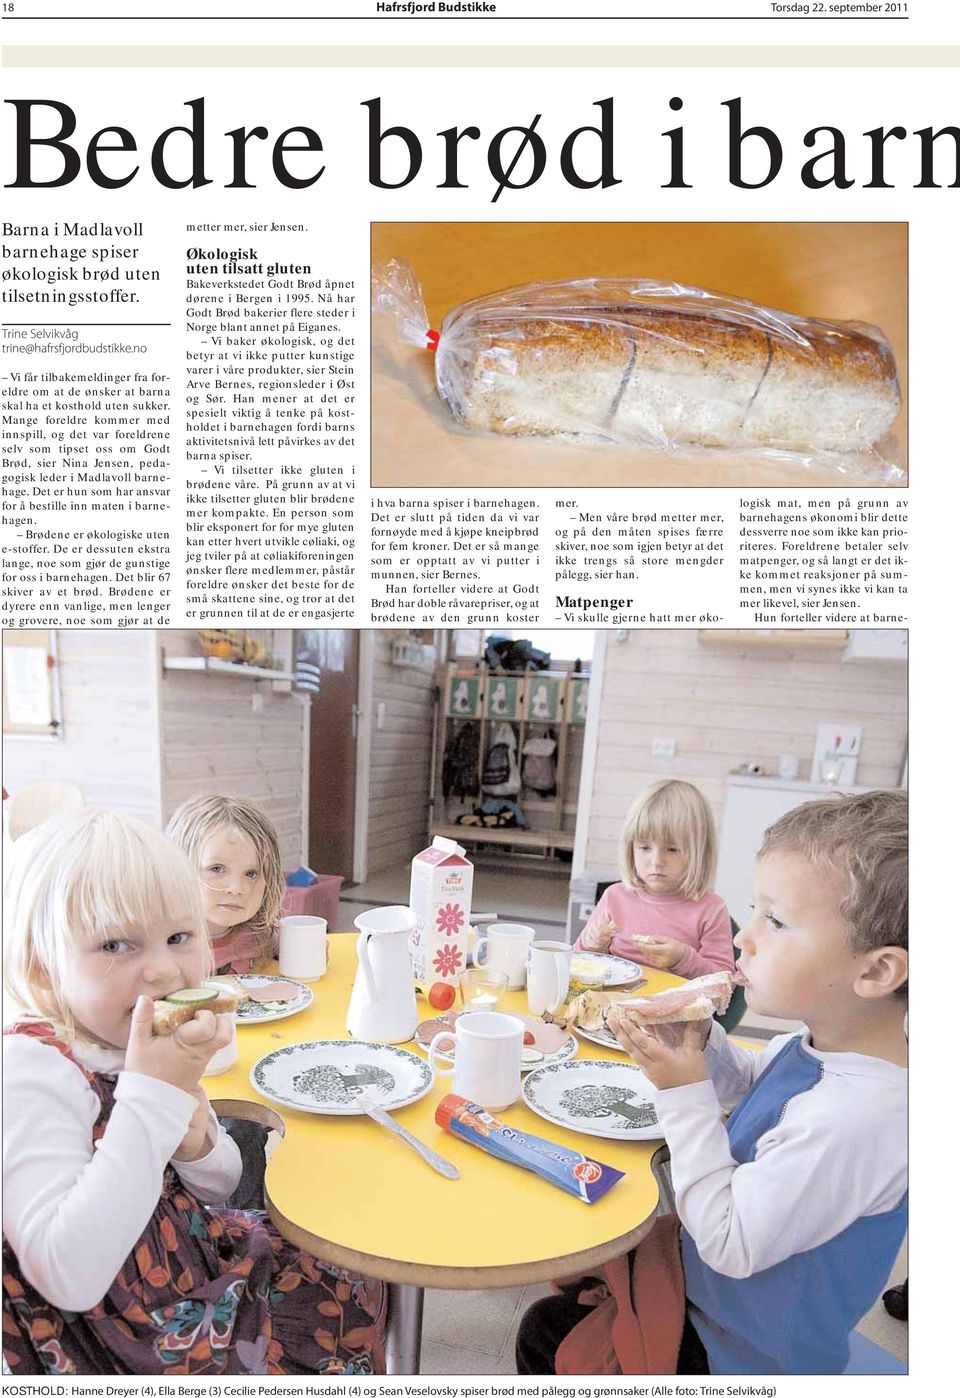 Mange foreldre kommer med innspill, og det var foreldrene selv som tipset oss om Godt Brød, sier Nina Jensen, pedagogisk leder i Madlavoll barnehage.